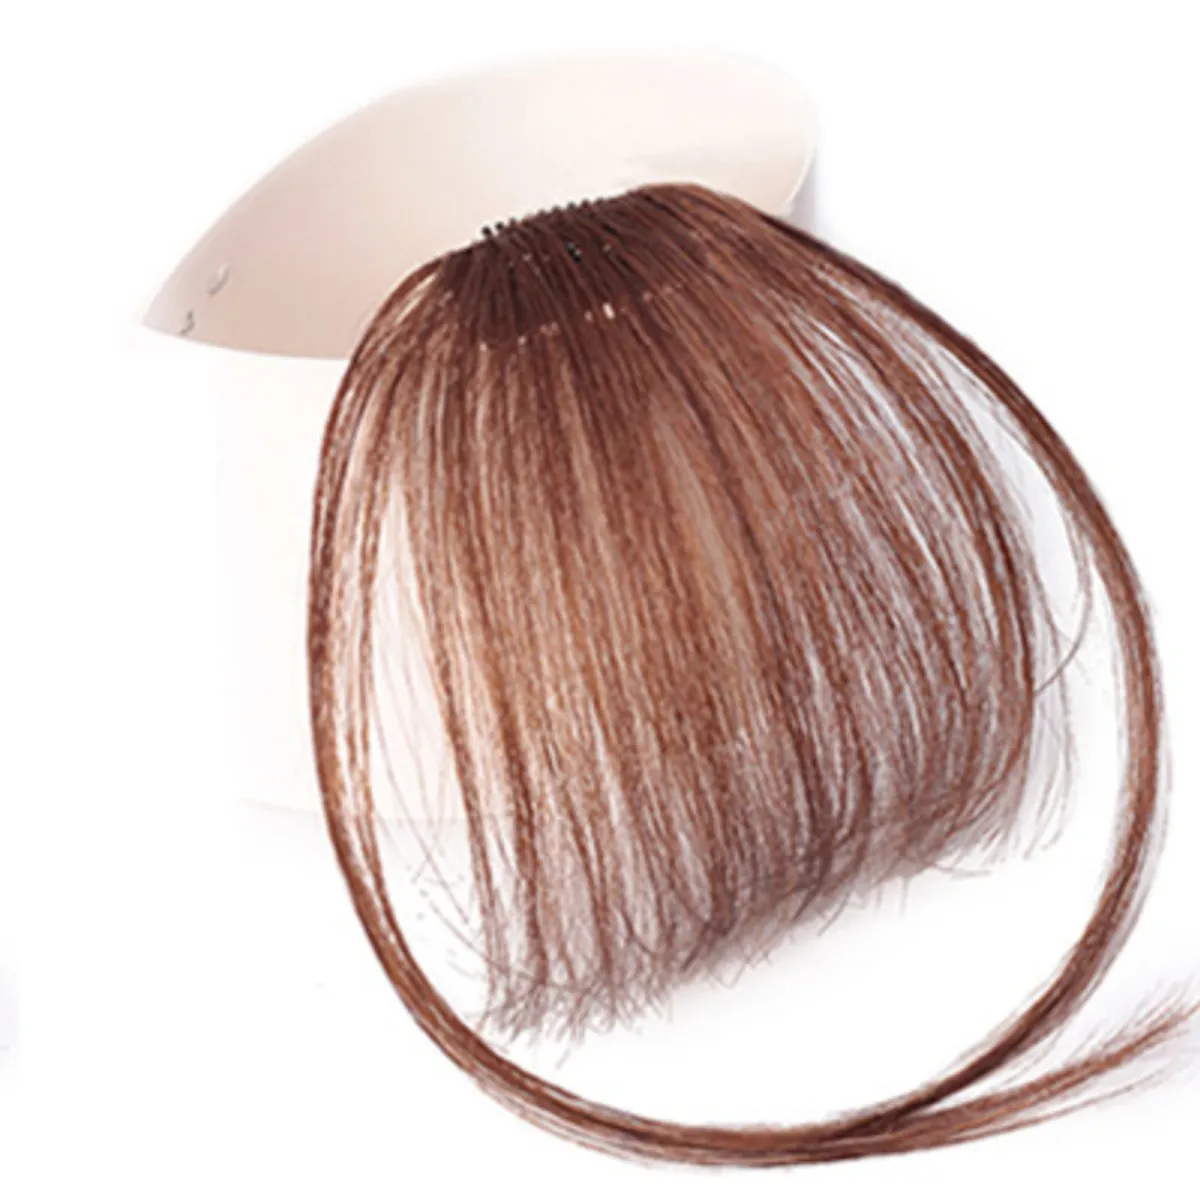 Bạn muốn tóc mái mọc dày hơn nhưng không muốn đến phòng tạo kiểu tóc? Tóc mái thưa giả sẽ giúp bạn giải quyết vấn đề này. Bạn có thể tùy chỉnh kiểu tóc theo ý muốn và sẵn sàng xuất hiện trước mọi người với mái tóc đầy đặn và bồng bềnh.